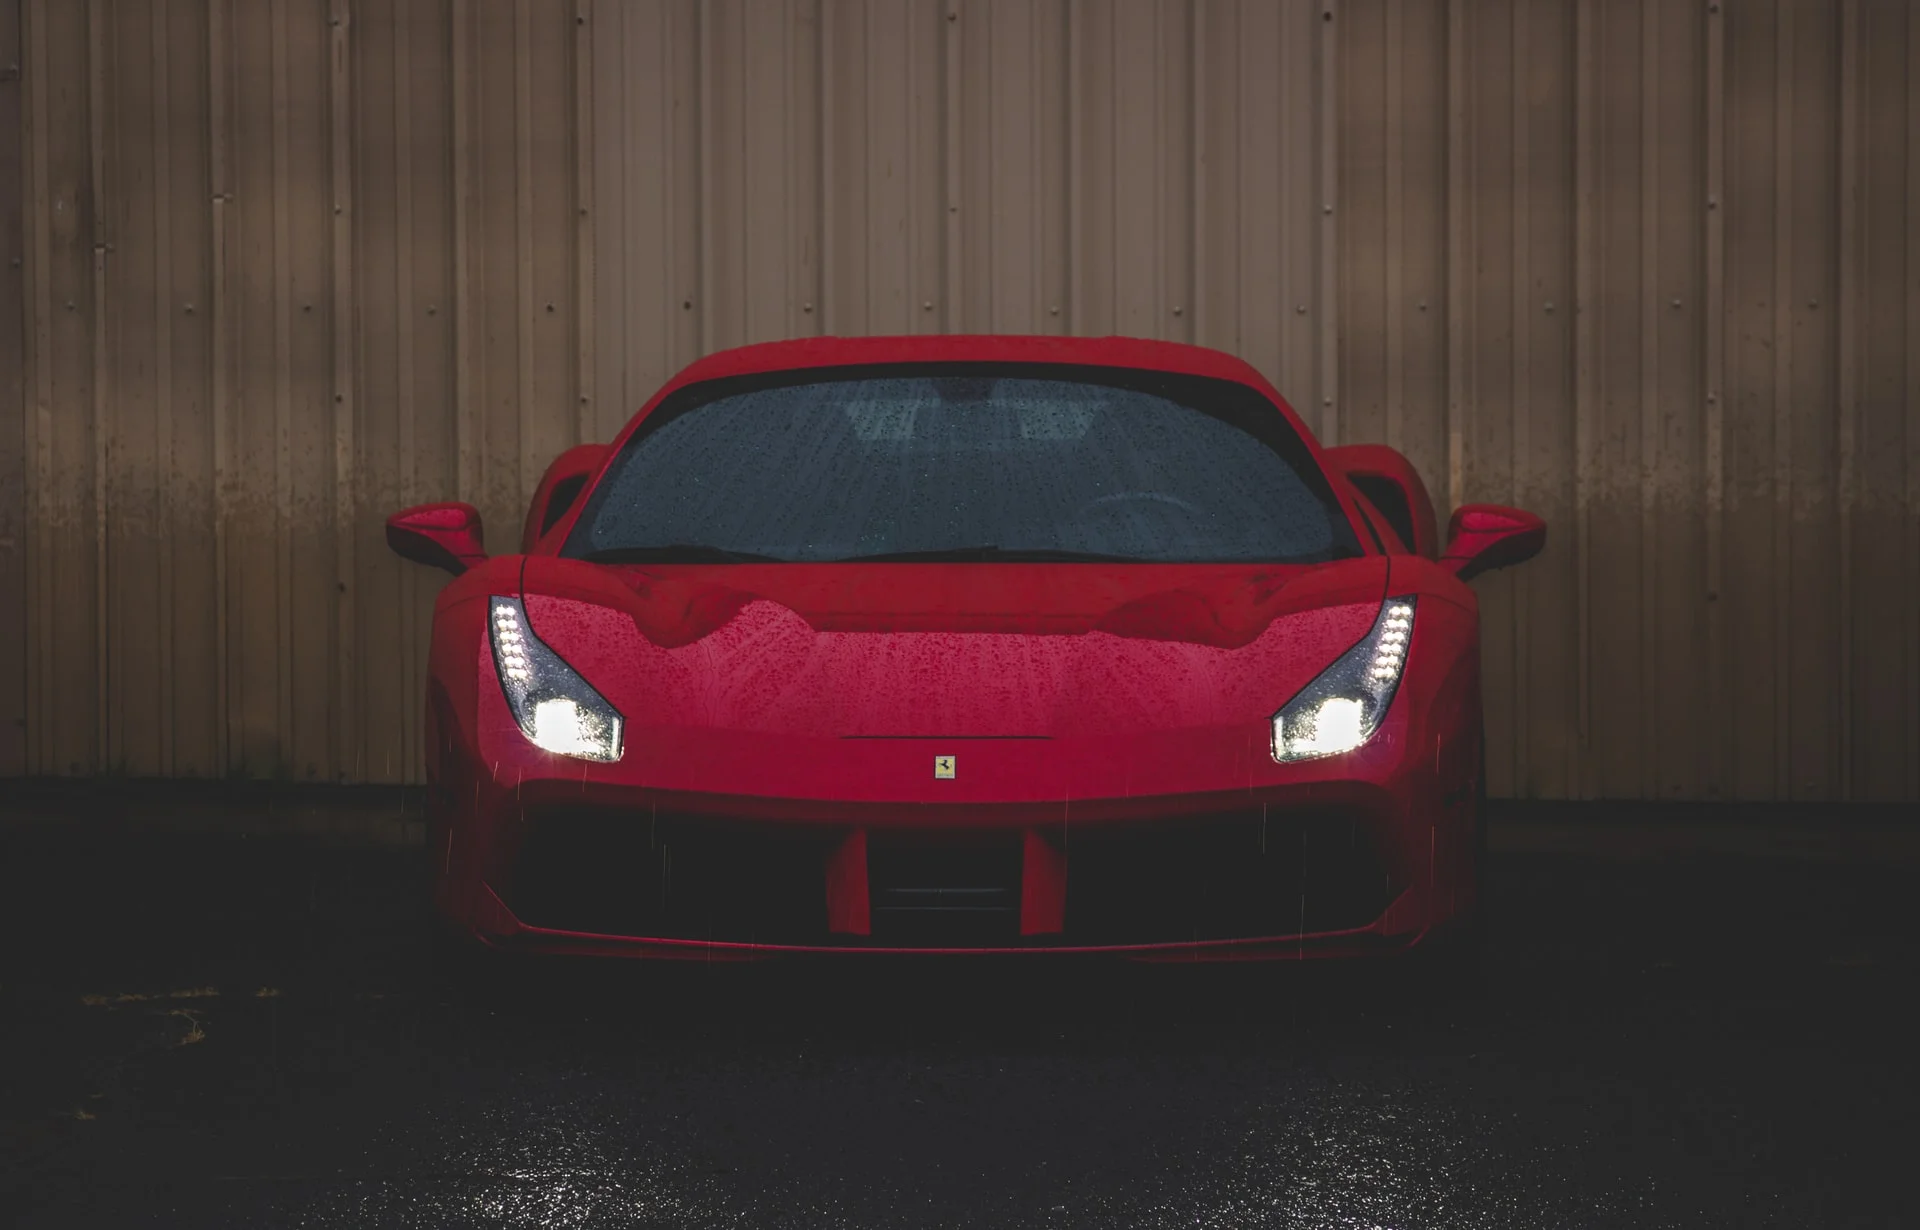 Ferrari red sports car